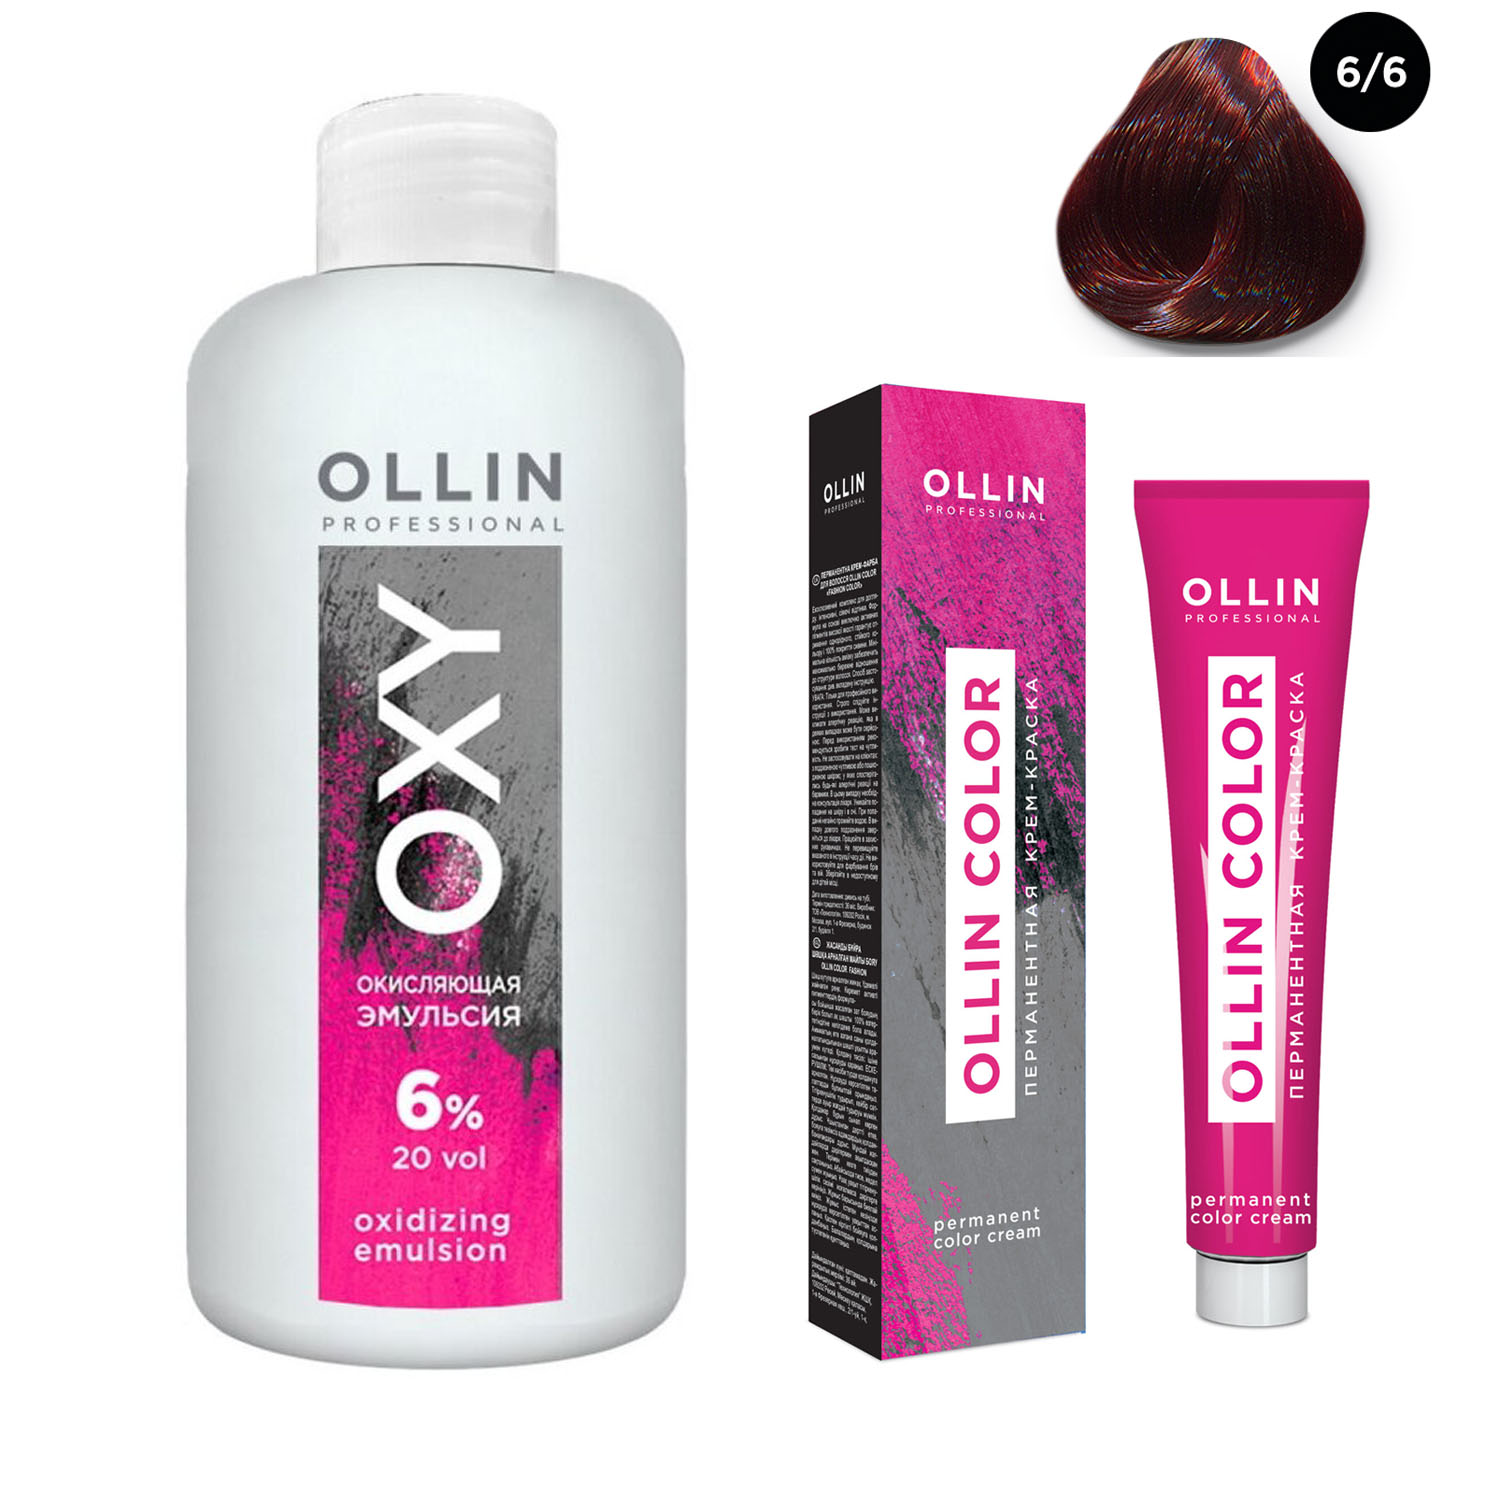 Ollin Professional Набор Перманентная крем-краска для волос Ollin Color оттенок 6/6 темно-русый красный 100 мл + Окисляющая эмульсия Oxy 6% 150 мл (Ollin Professional, Ollin Color)